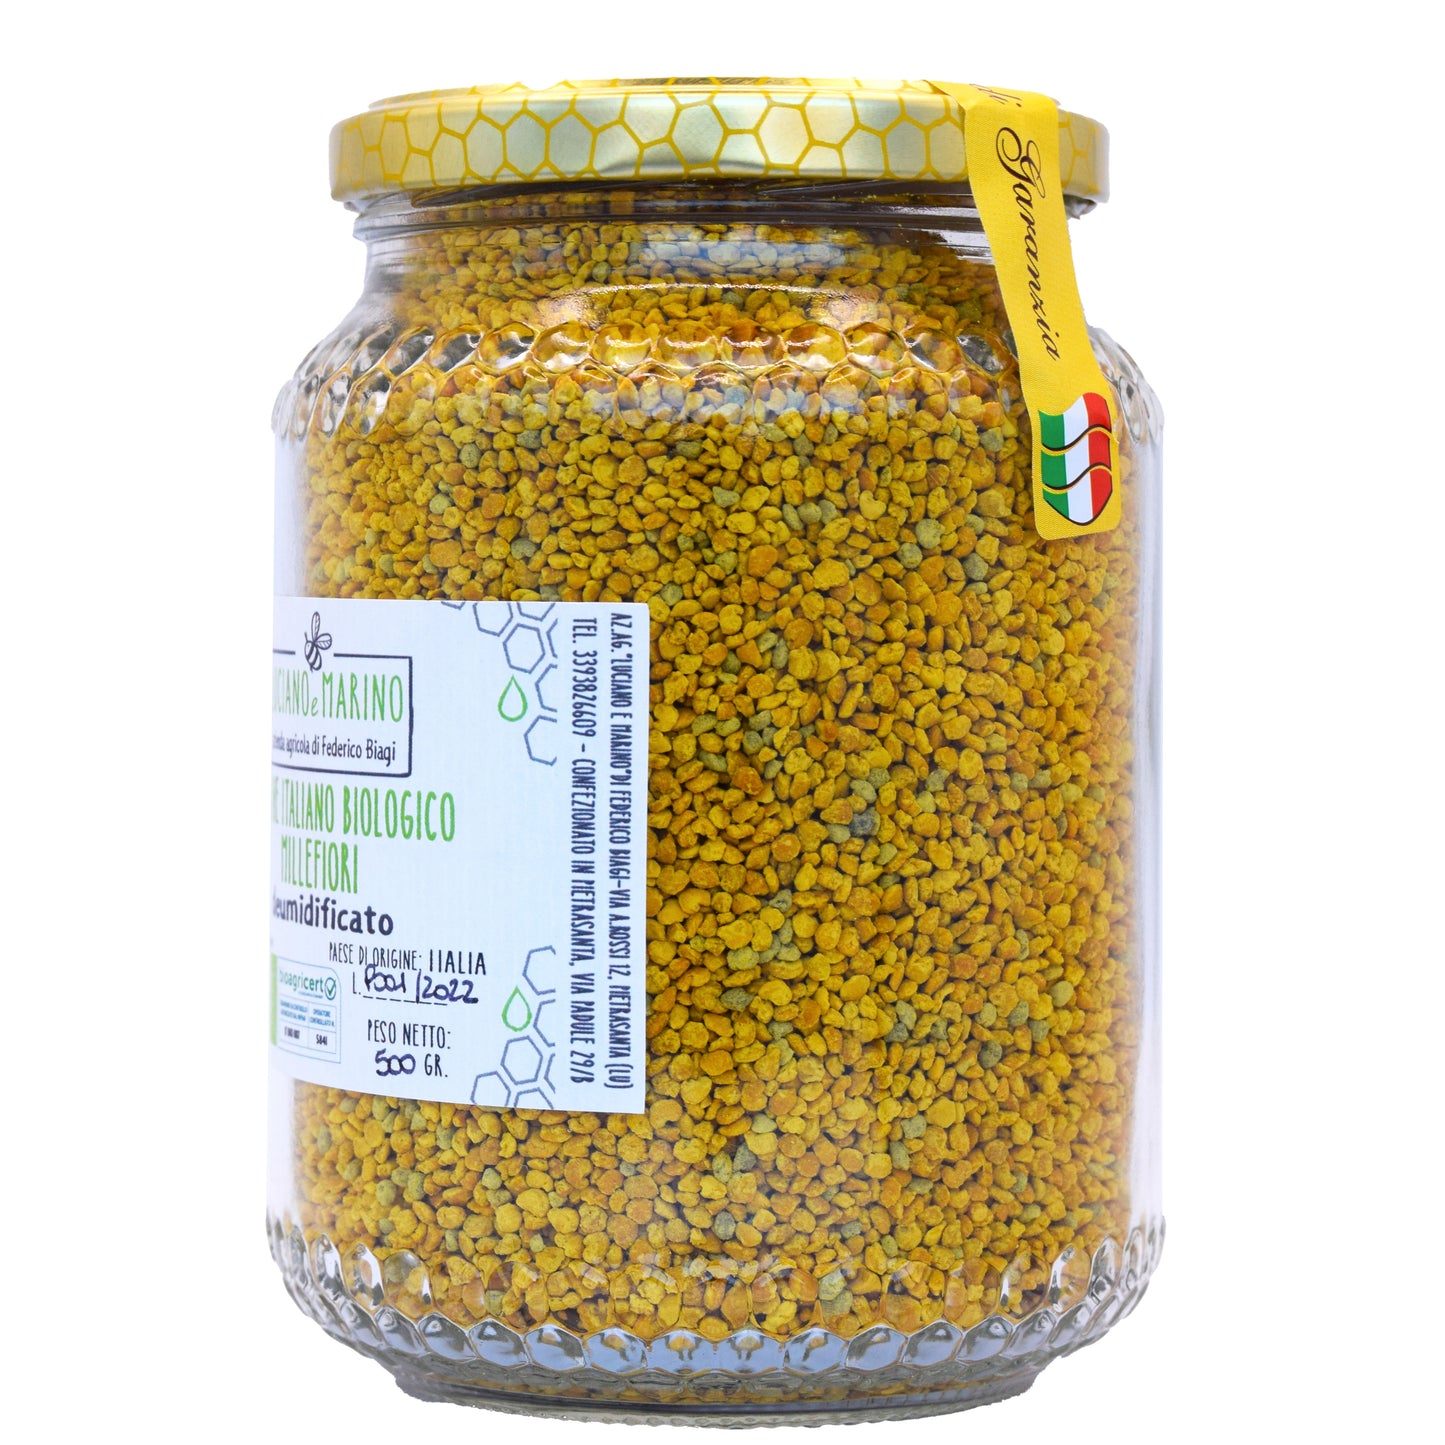 Polline Italiano Bio Millefiori deumidificato - 500g